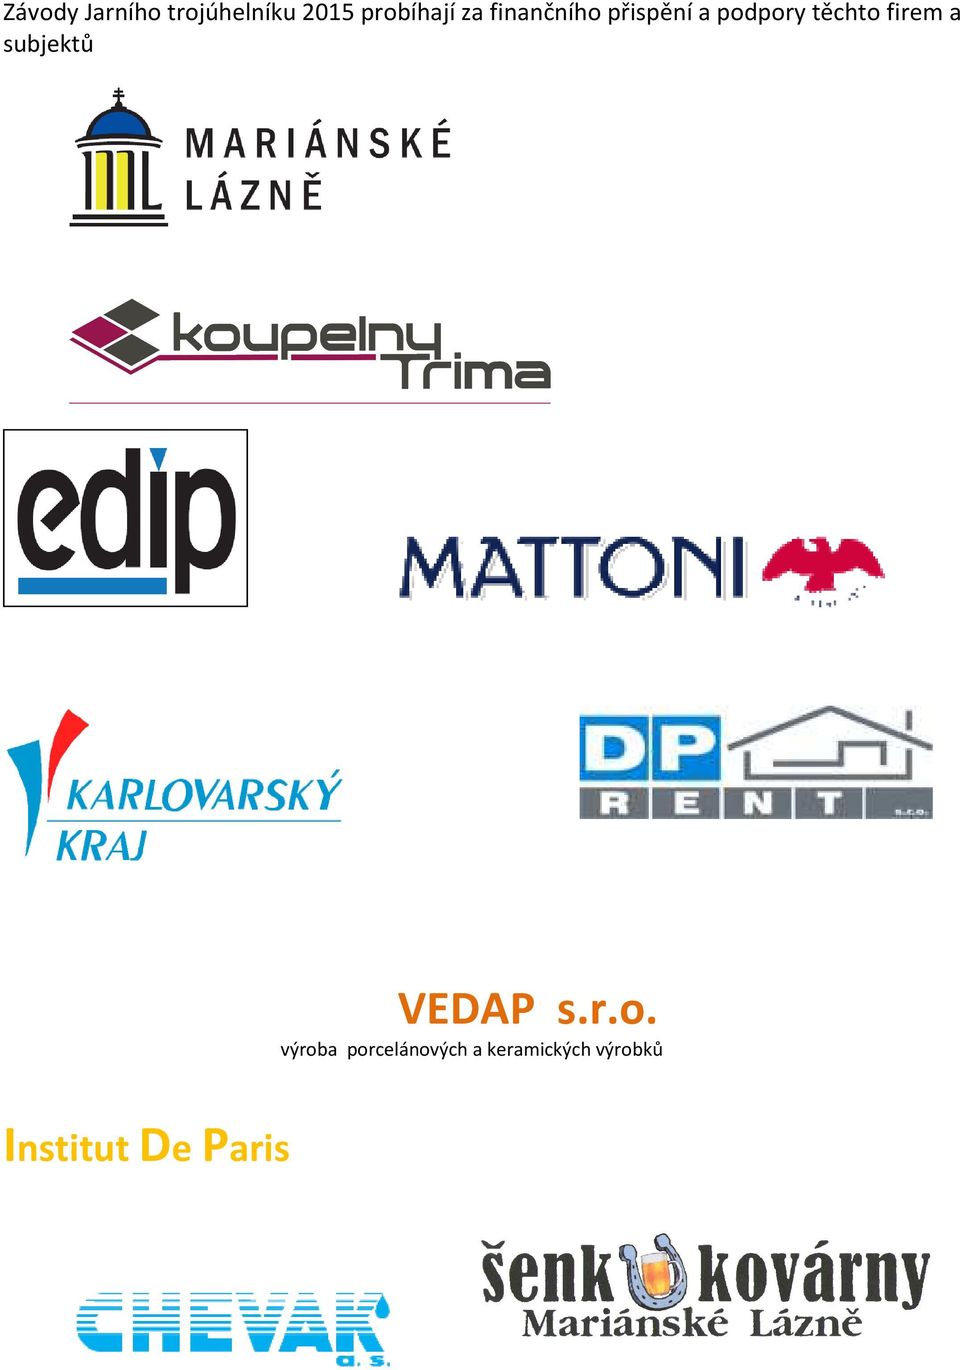 firem a subjektů Institut De Paris VEDAP s.